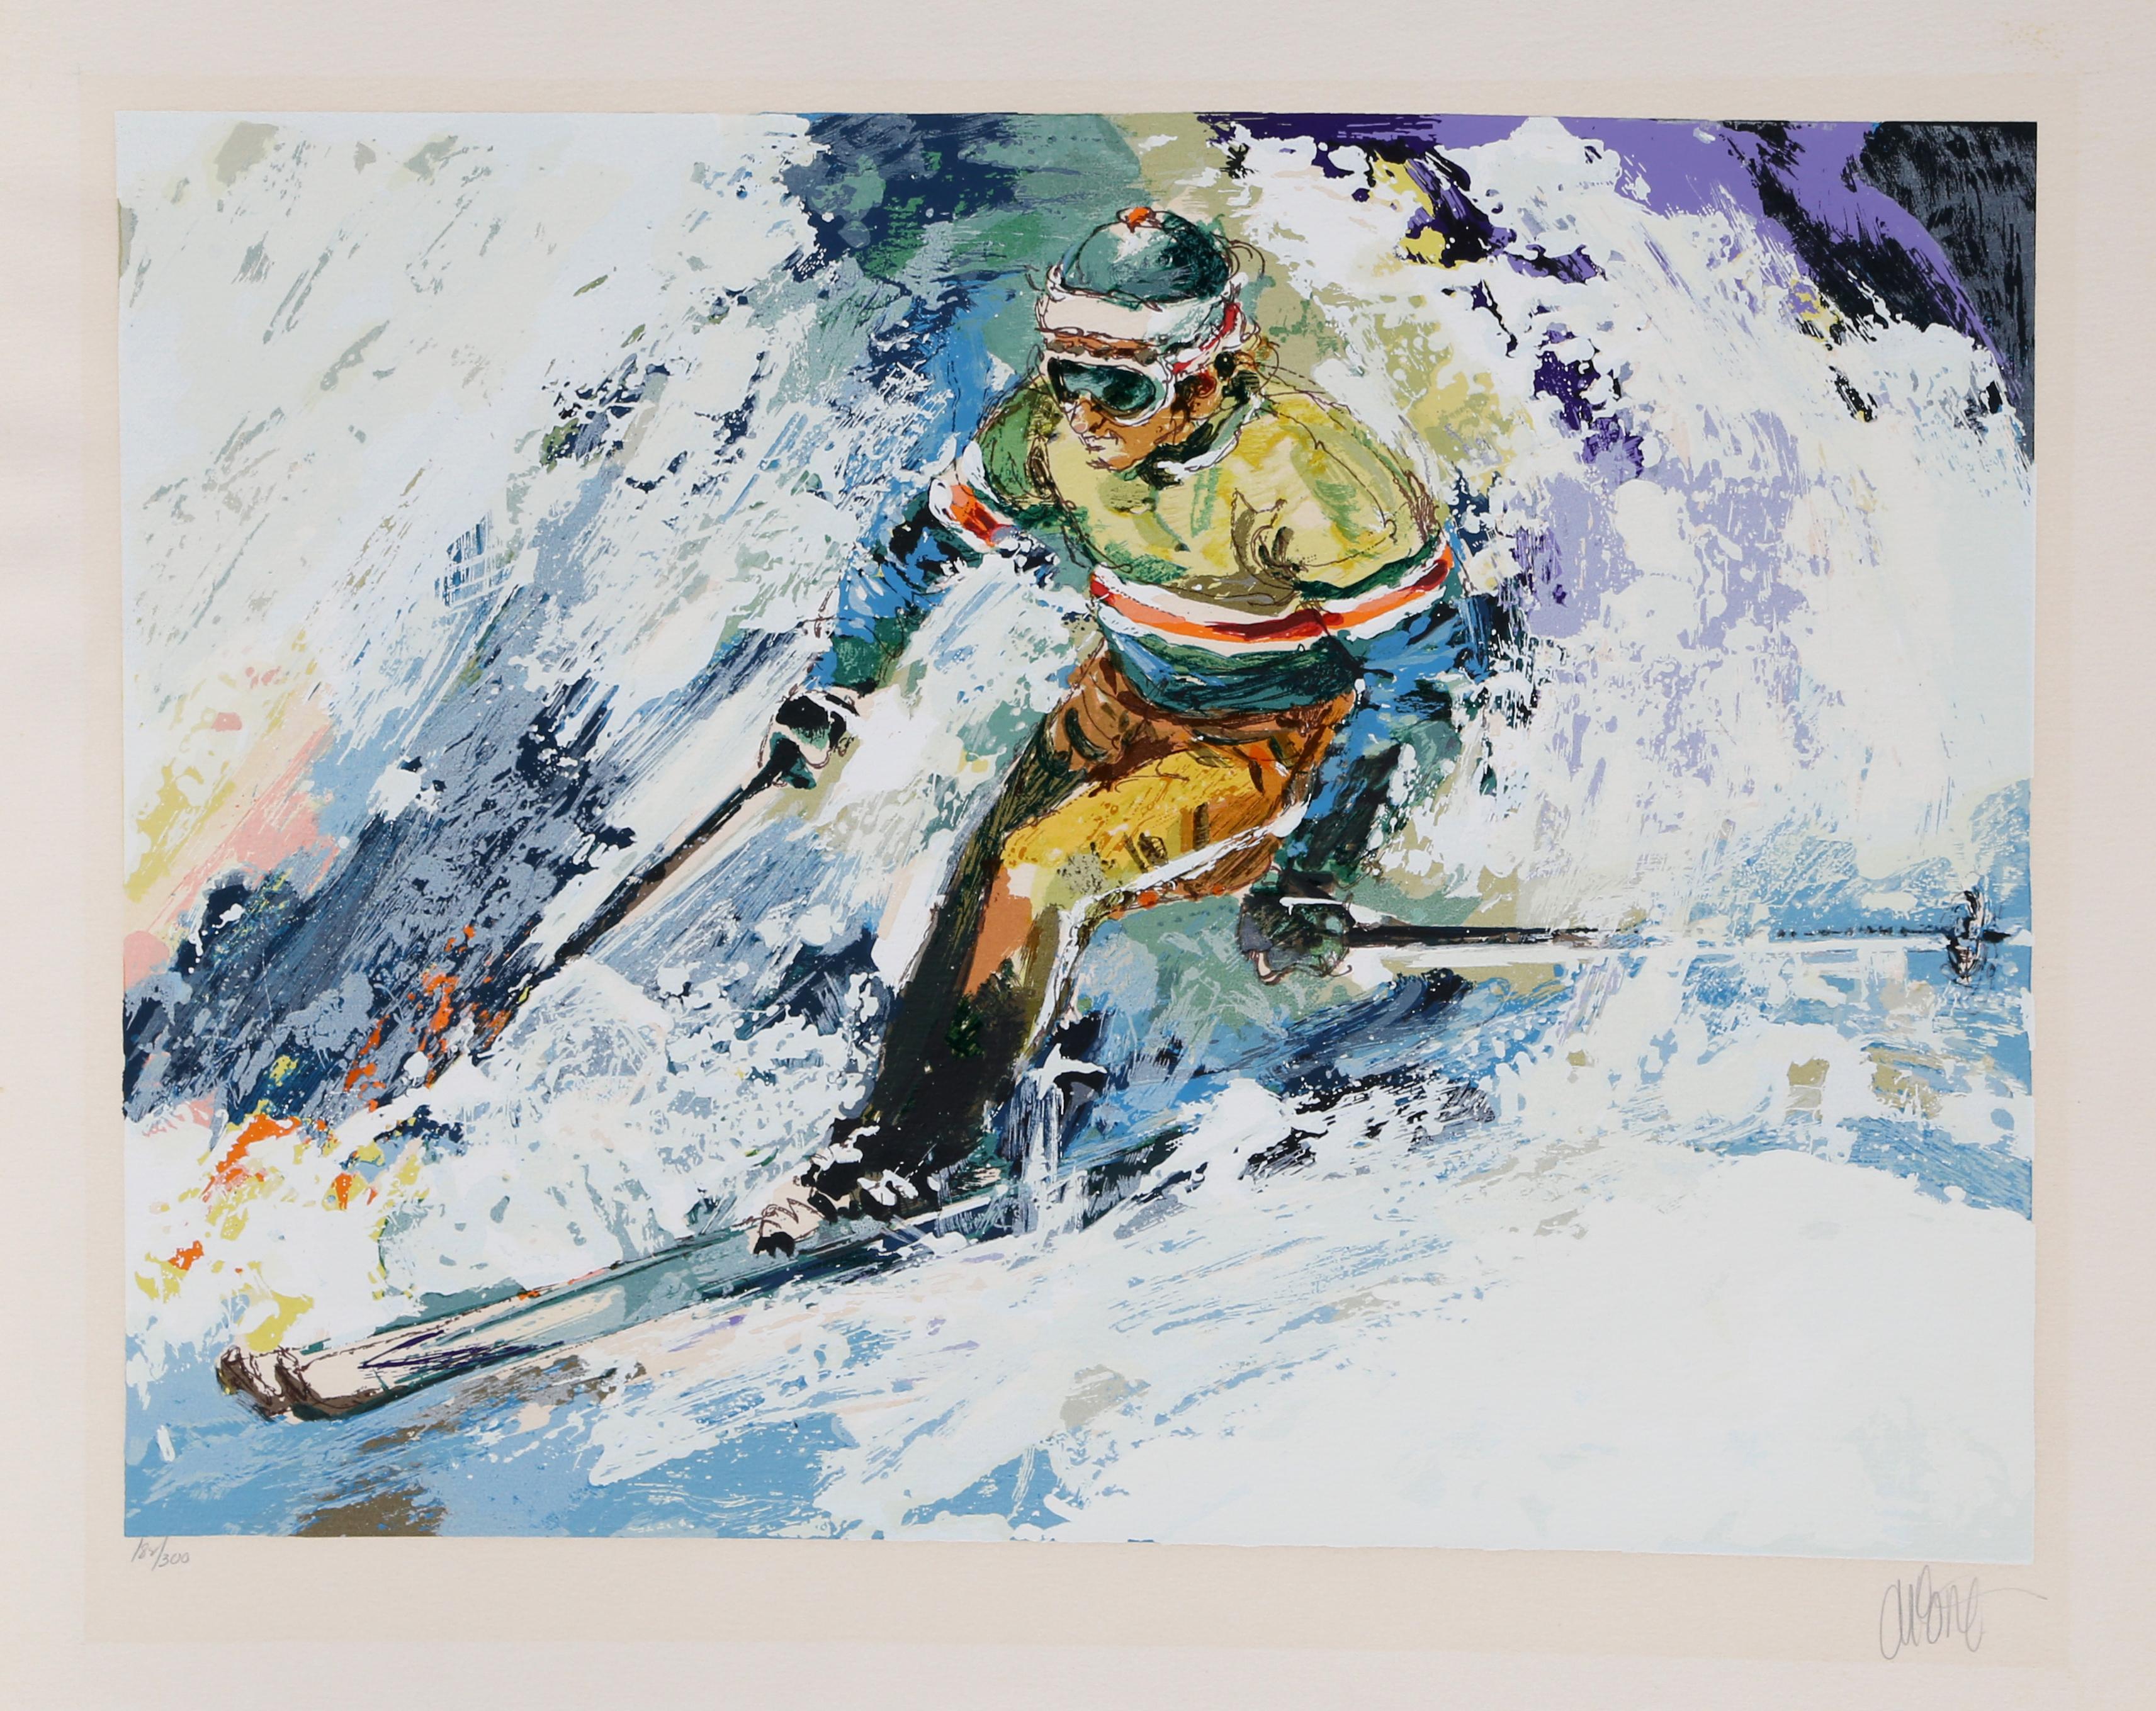 Skifahrer II
Wayland Moore, Amerikaner (1935)
Datum: ca. 1980
Siebdruck, signiert und nummeriert mit Bleistift
Auflage von 182/300
Bildgröße: 18 x 24 Zoll
Größe: 23 x 29 Zoll (58,42 x 73,66 cm)